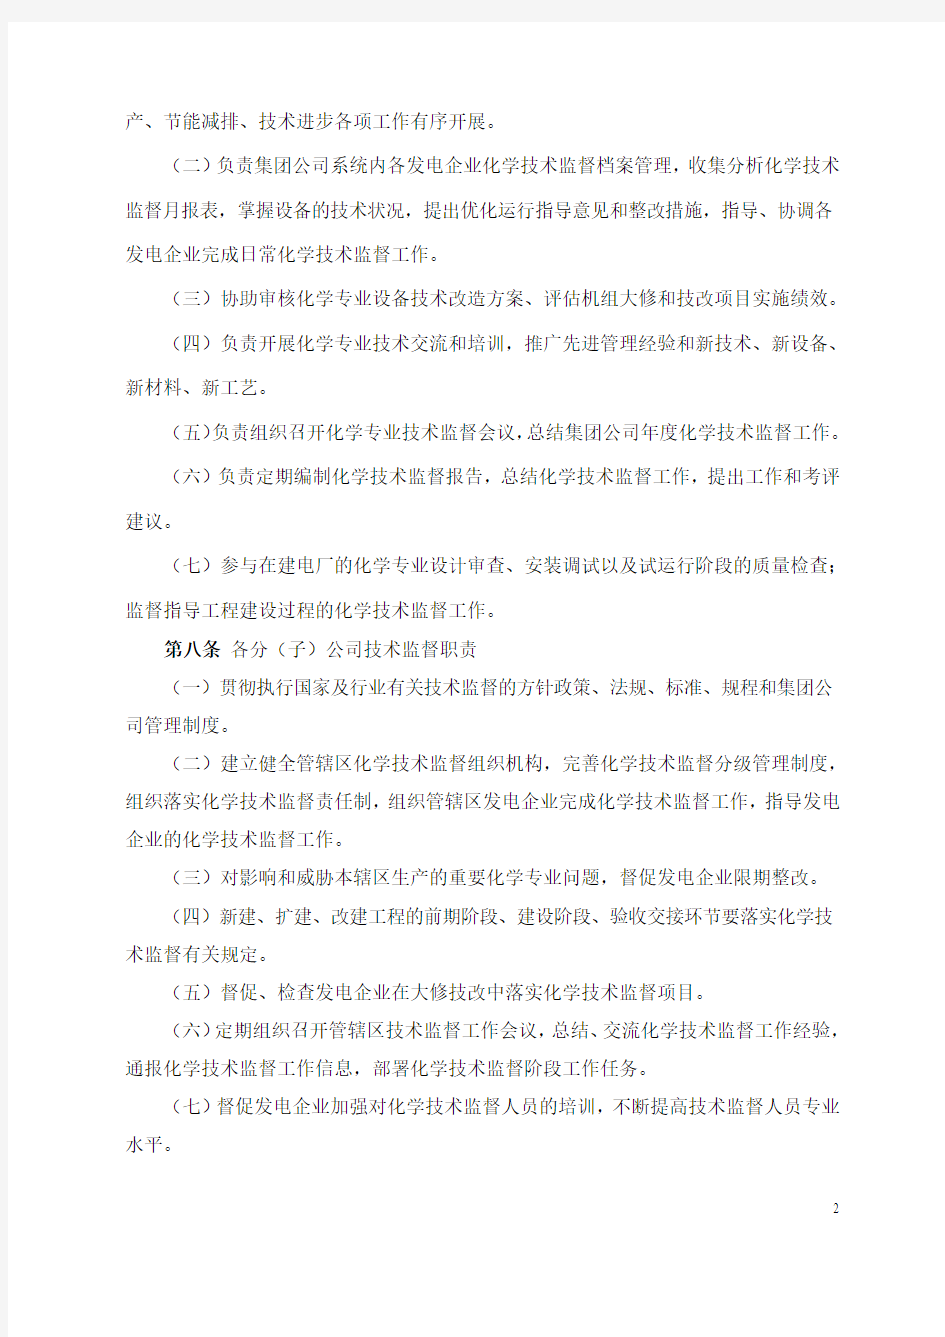 中国国电集团公司化学技术监督实施细则